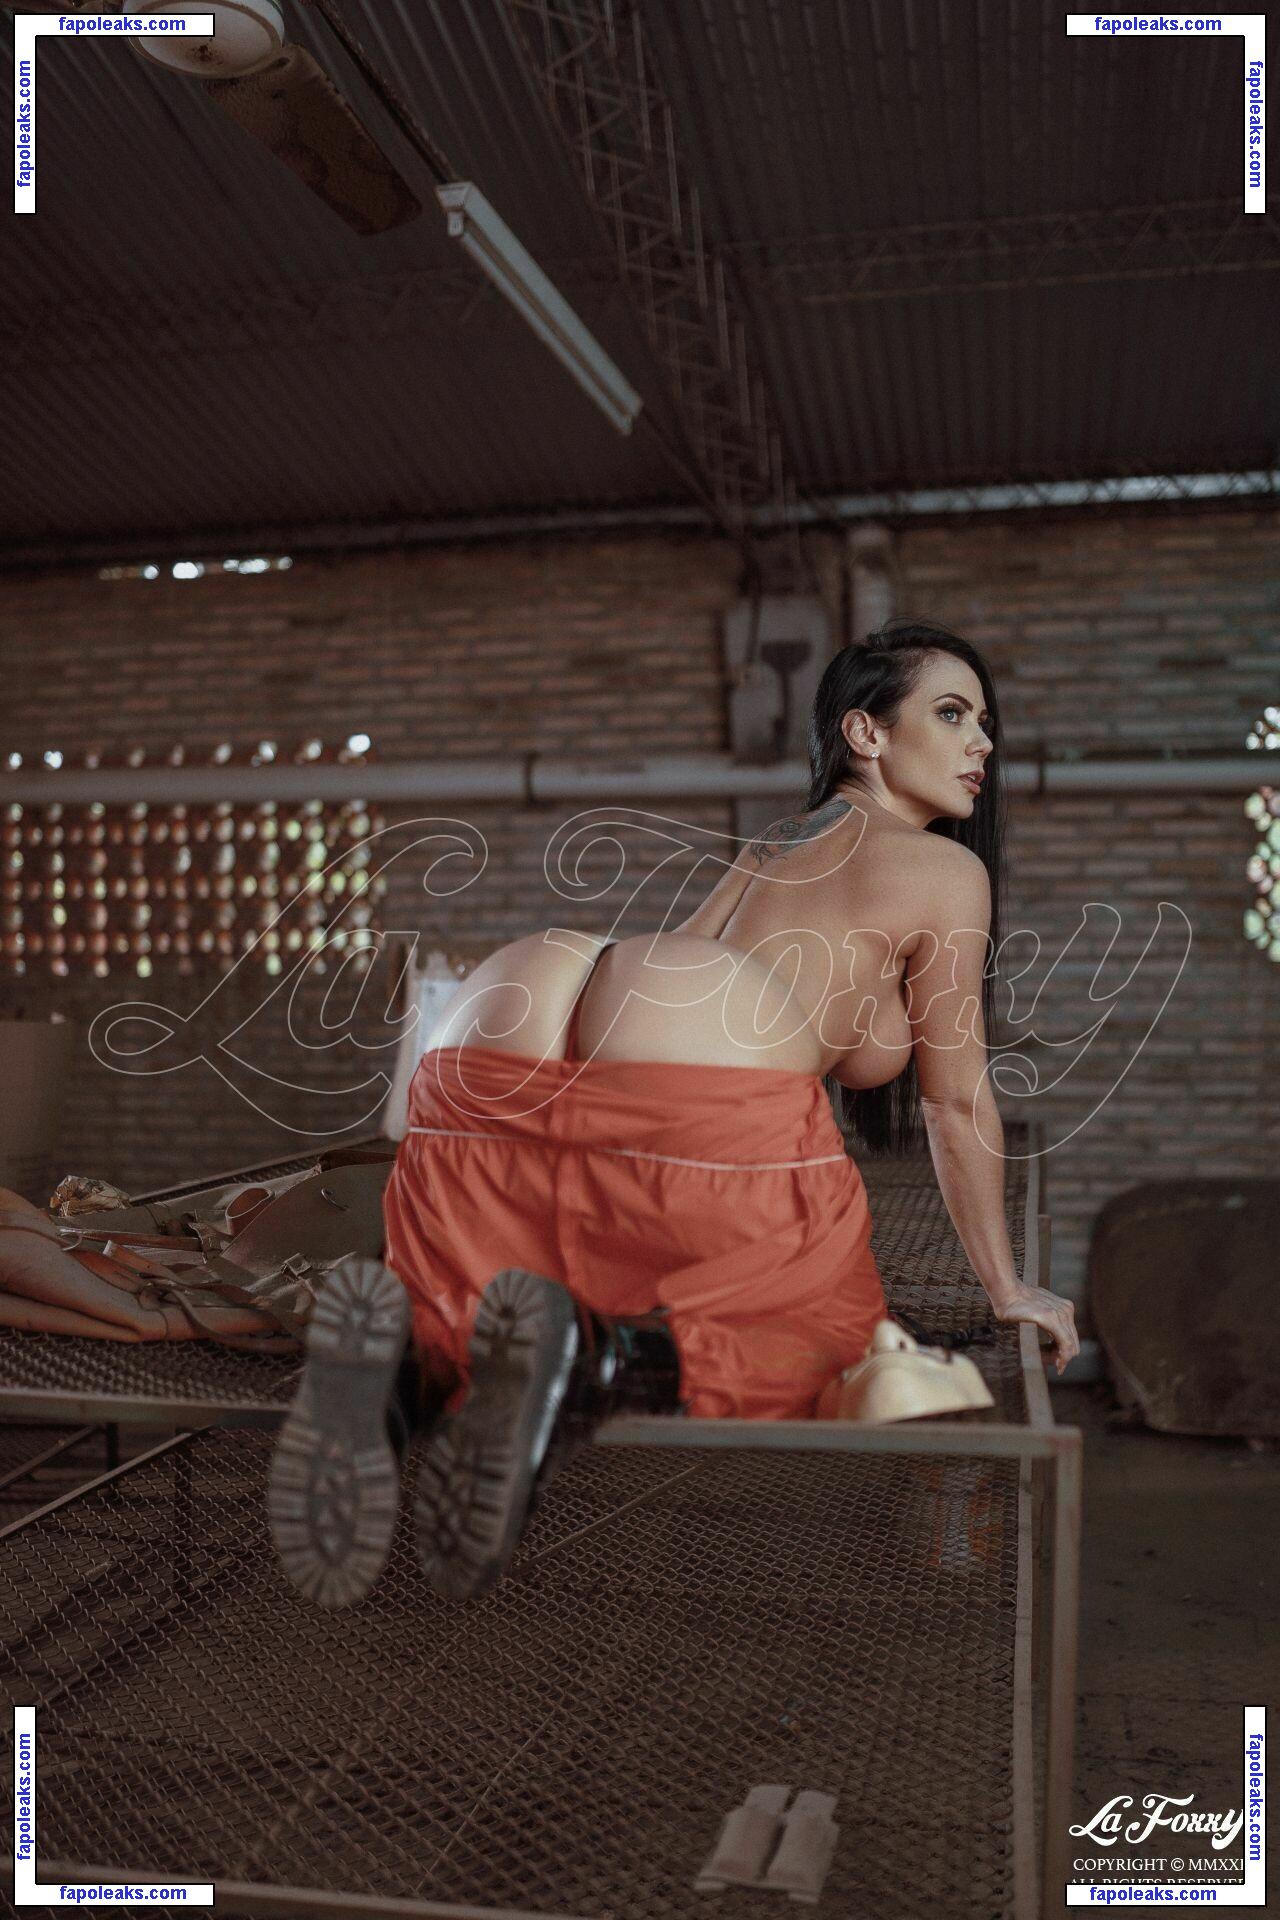 Pamela Rodríguez / lapameli / pamerodriguezv nude photo #0016 from OnlyFans